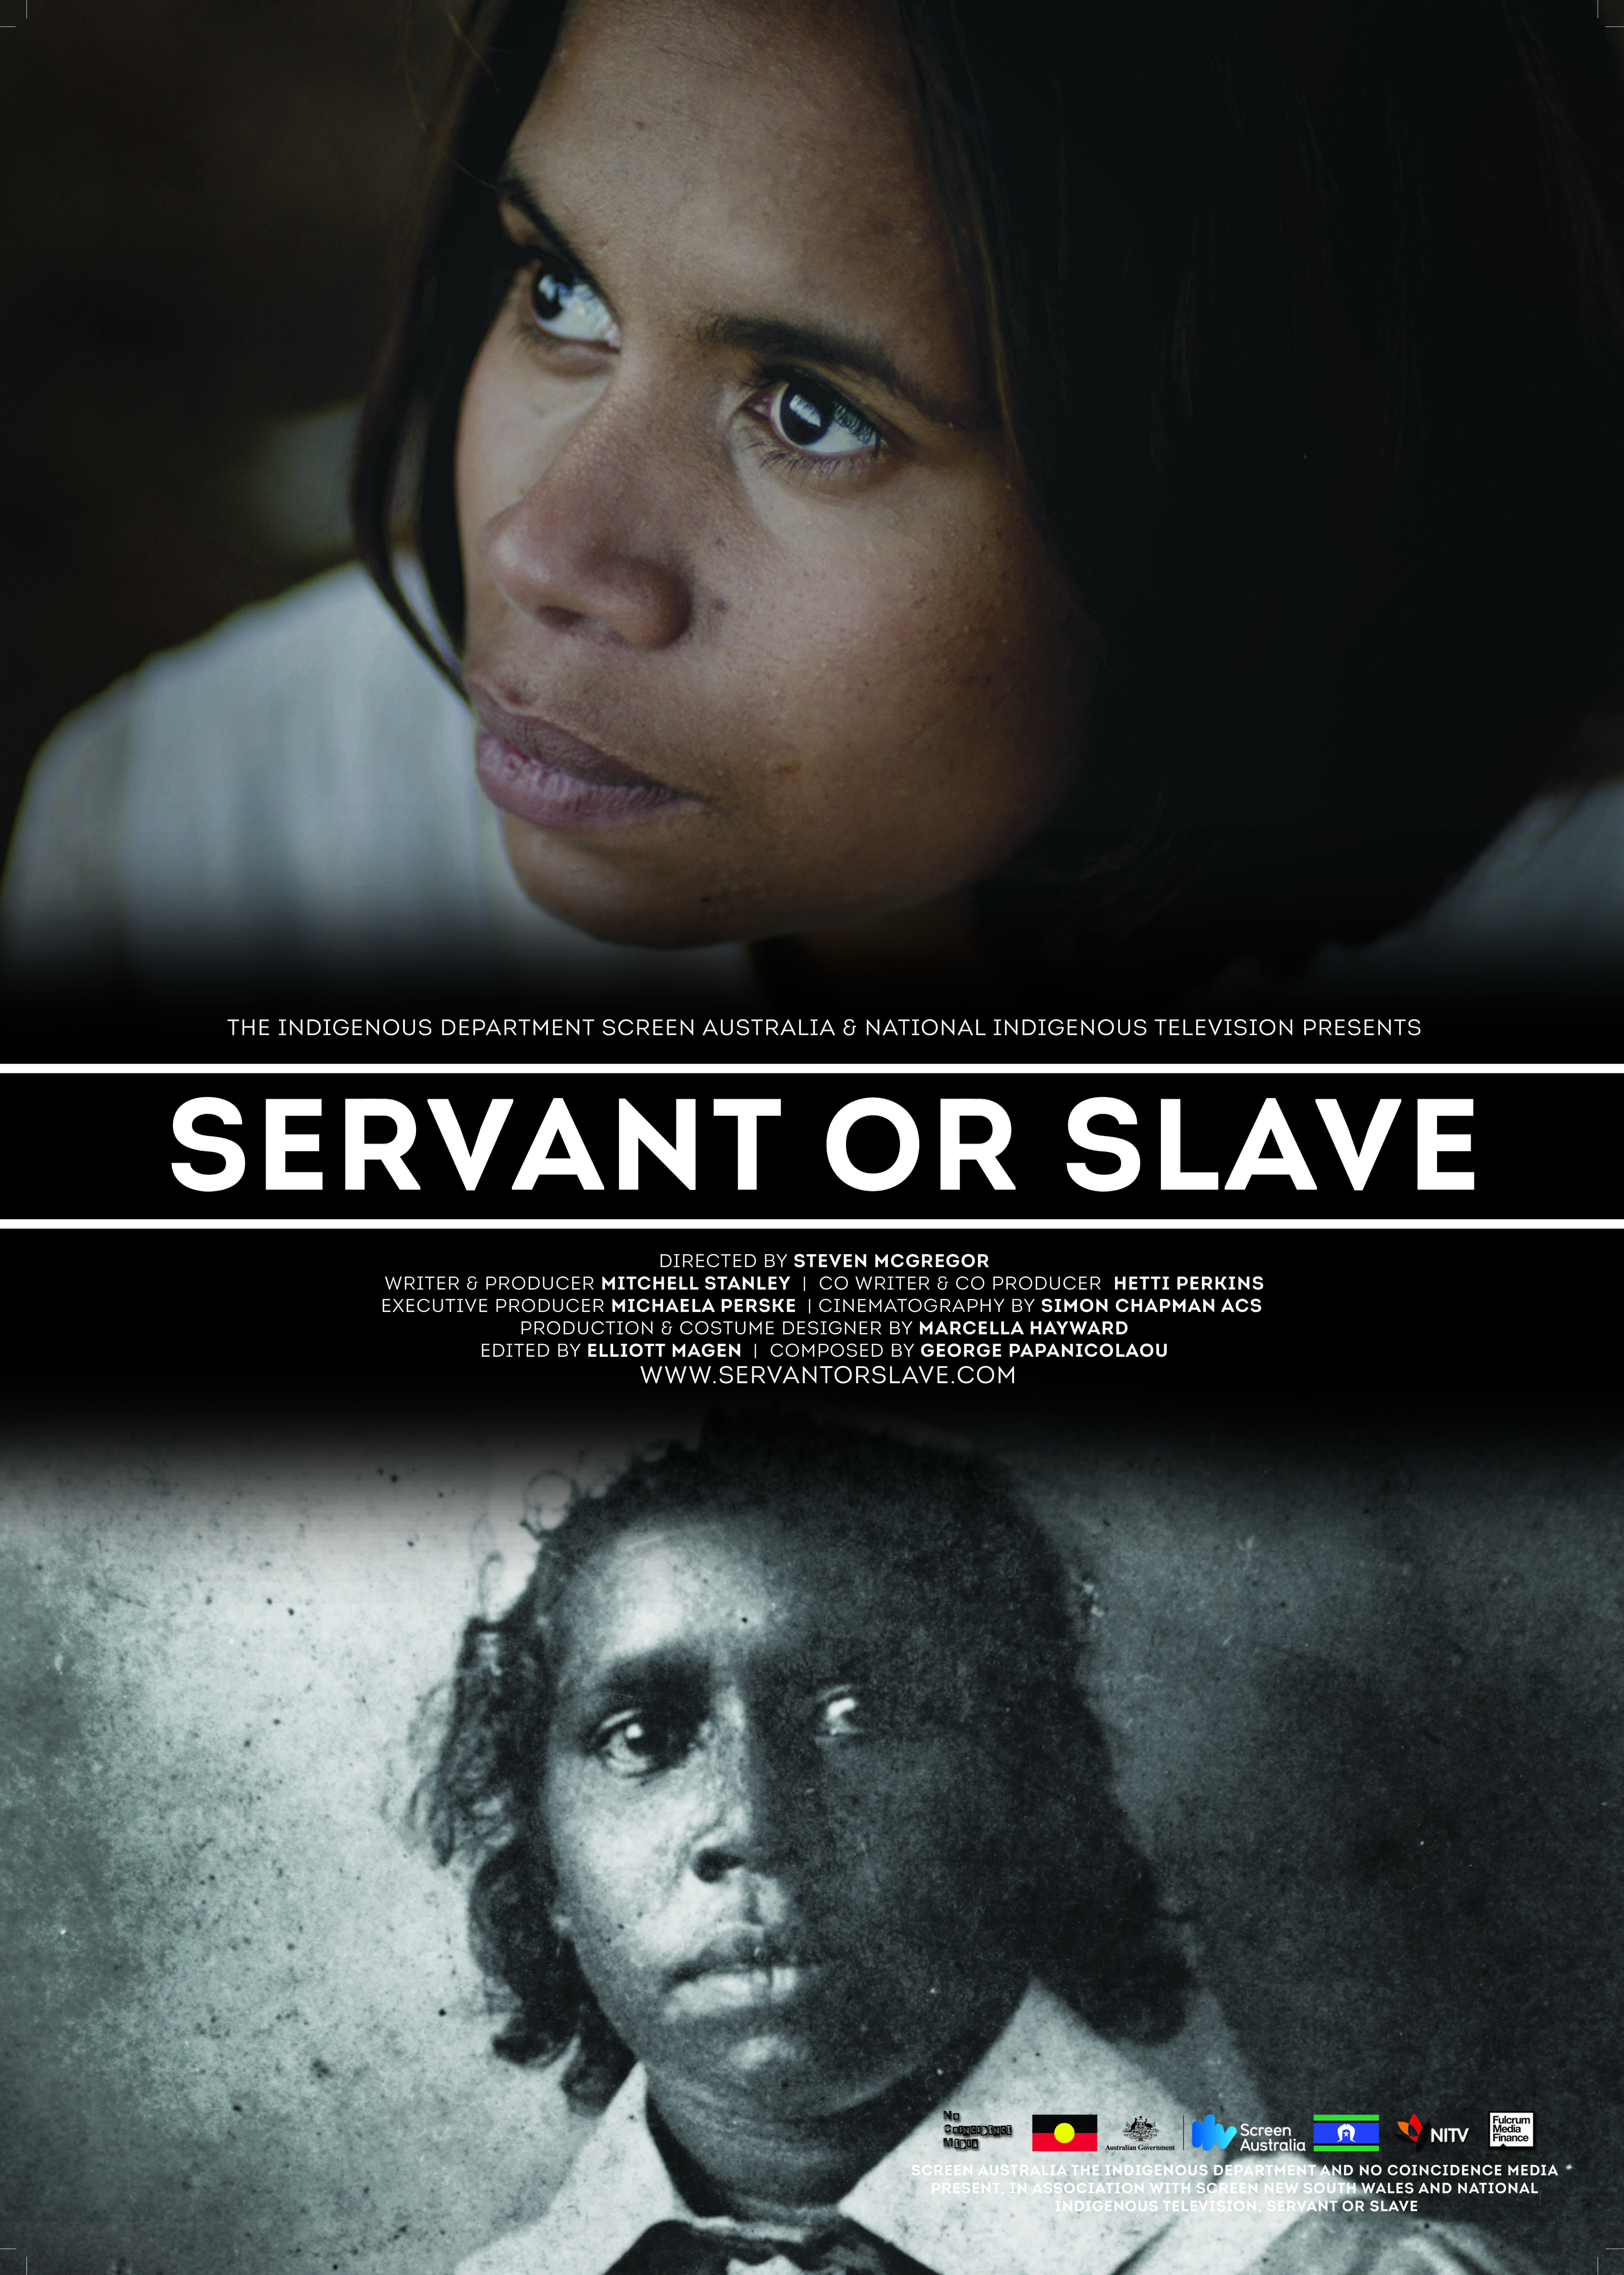 Nonton film Servant or Slave layarkaca21 indoxx1 ganool online streaming terbaru